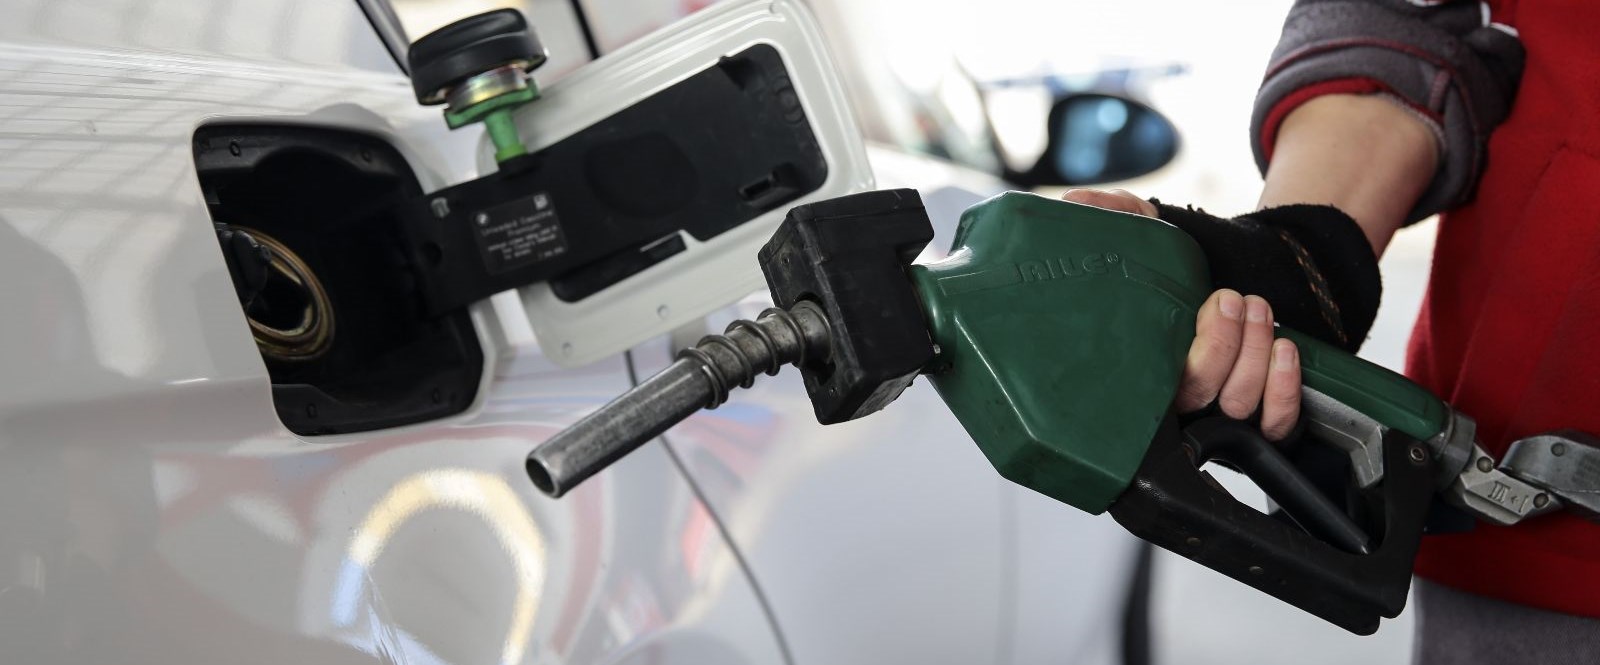 TESK: Benzin-motorinde vergi yüzde 10 inmeli